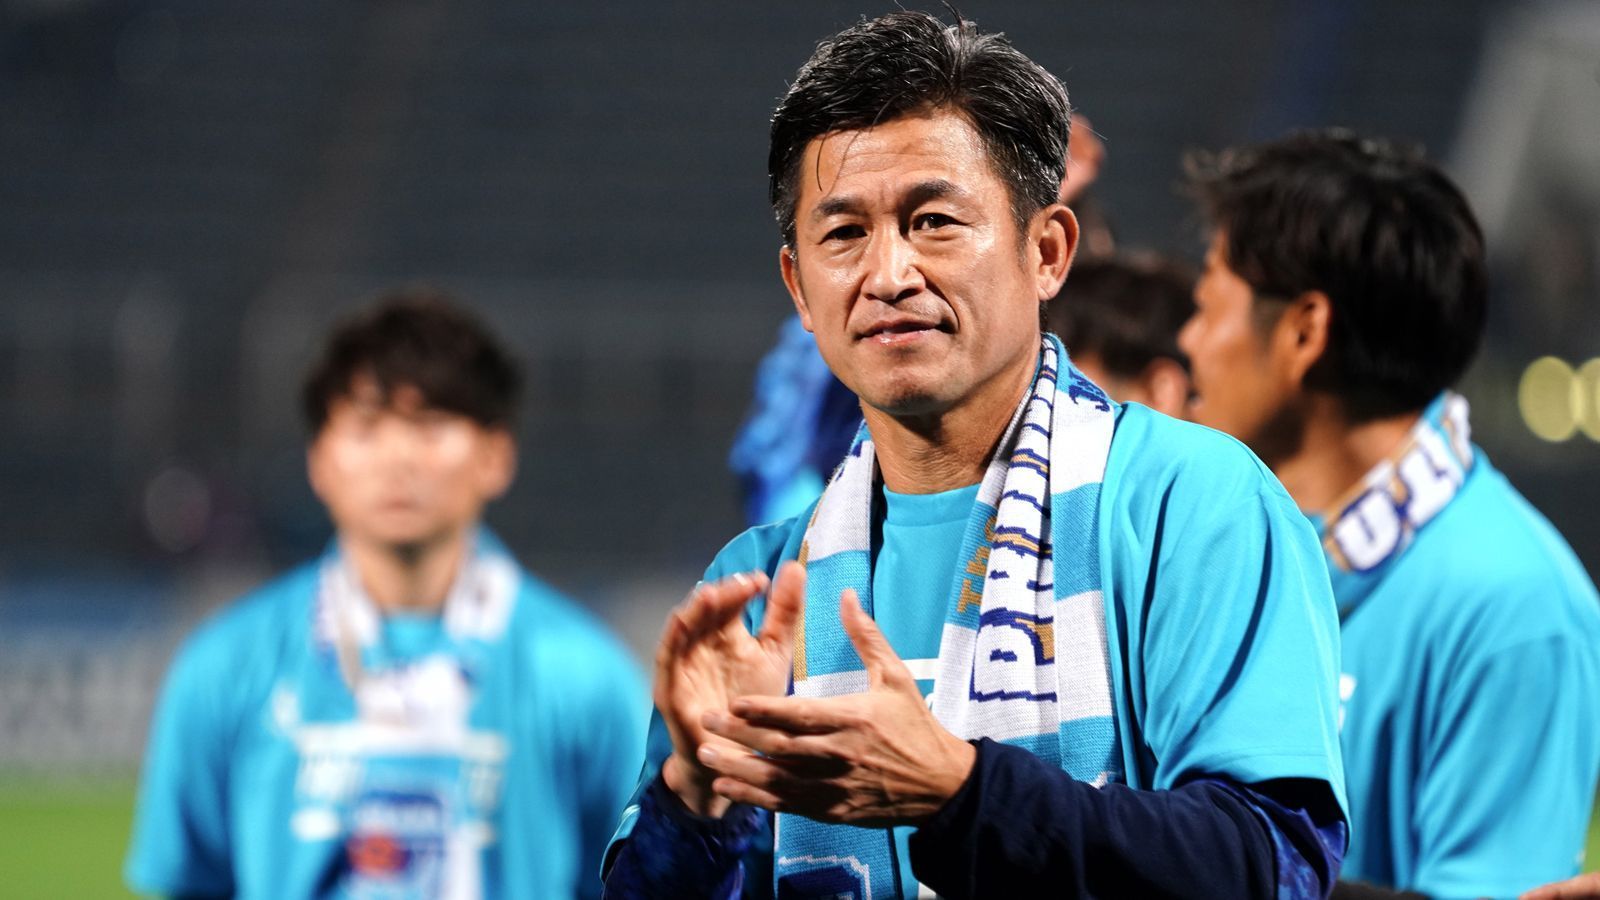 
                <strong>Gewinner: Kazuyoshi Miura</strong><br>
                Der japanische Klub FC Yokohama hat nach zwölf Jahren den Wiederaufstieg in die höchste Spielklasse des Landes geschafft. Und mit dem Team aus Yokohama kehrt ein ganz besonderer Spieler zurück in die J1 League zurück: Kazuyoshi Miura. Der Stürmer ist nämlich bereits 52 Jahre alt, will aber vom Aufhören immer noch nichts wissen. "Ich werde weitermachen, mein Bestes zu geben, um uns in der 1. Liga zu etablieren", sagte Ex-Nationalspieler Miura (89 Länderspiele) nach dem Aufstieg Yokohamas bei "Sanspo.com".
              